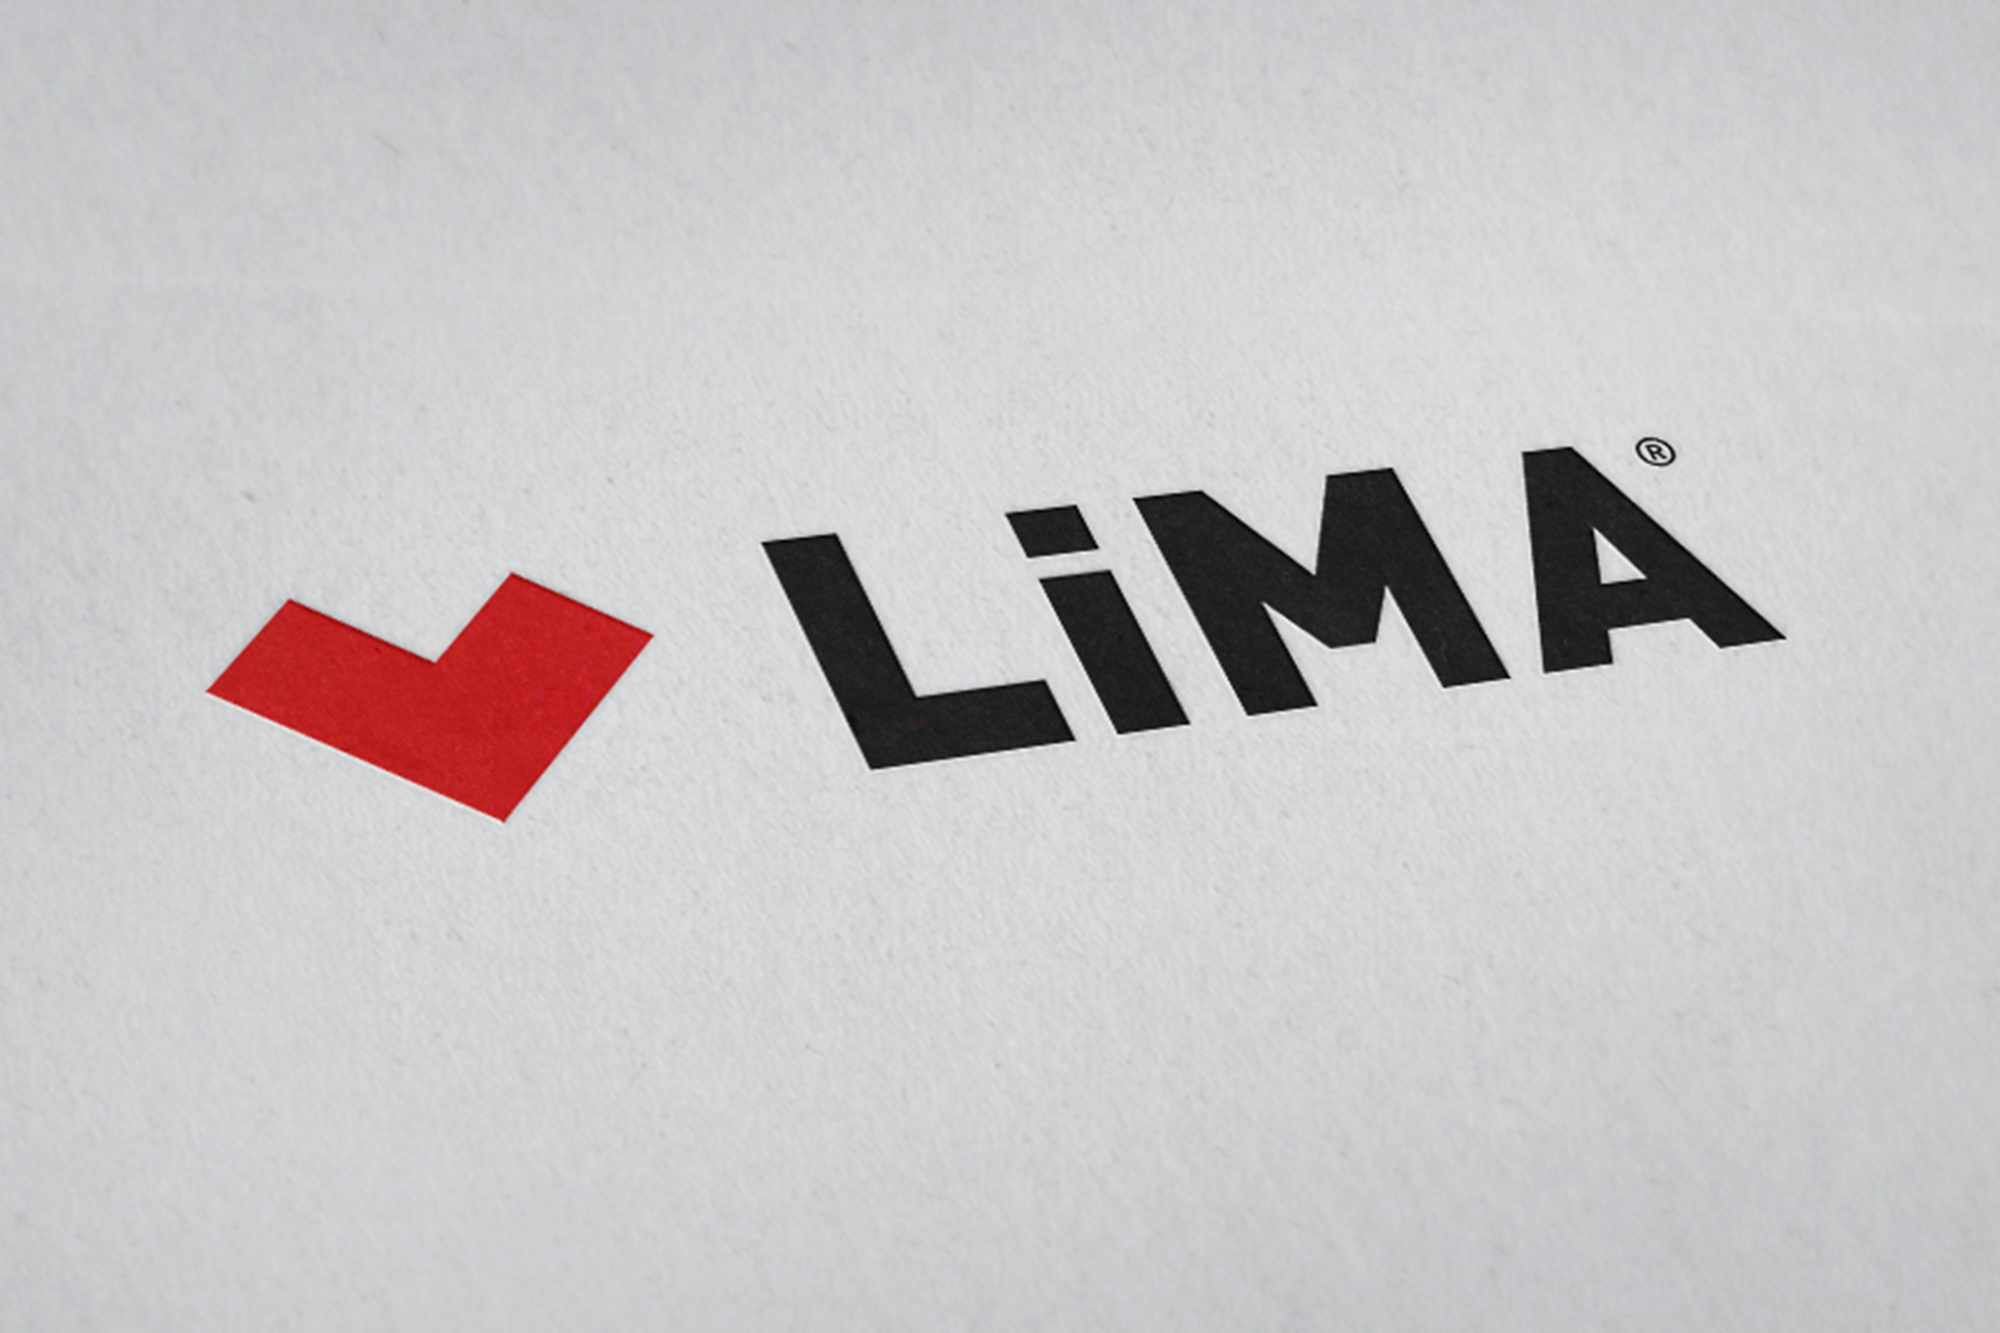 Lima Sağlık Logo ve Kurumsal Kimlik